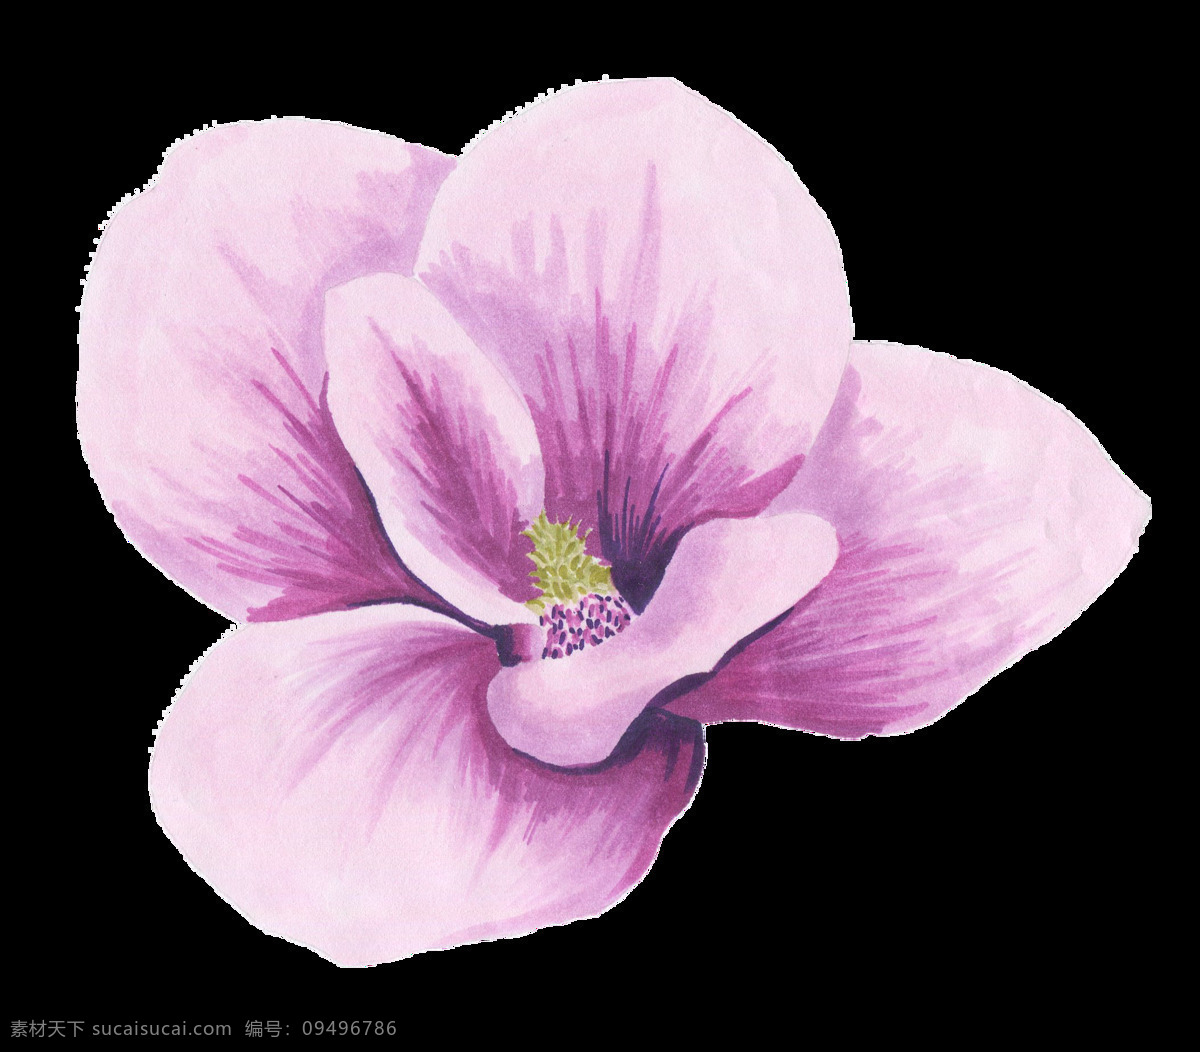 朵 紫色 美丽 花朵 一朵 简约 幽香 淡雅 优雅 漂亮 清新 红色